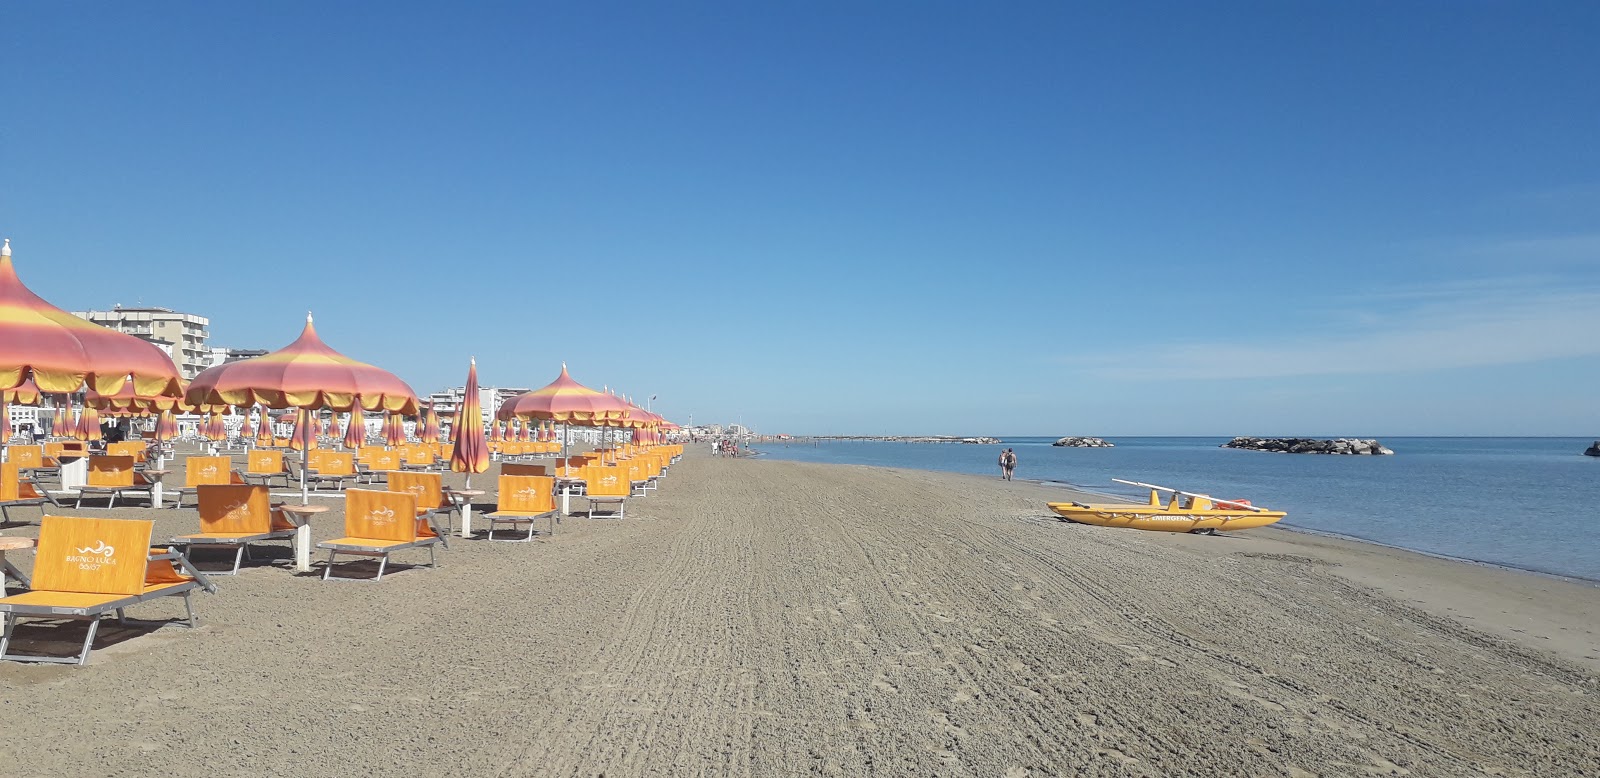 Foto di Torre pedrera beach con una superficie del sabbia fine e luminosa